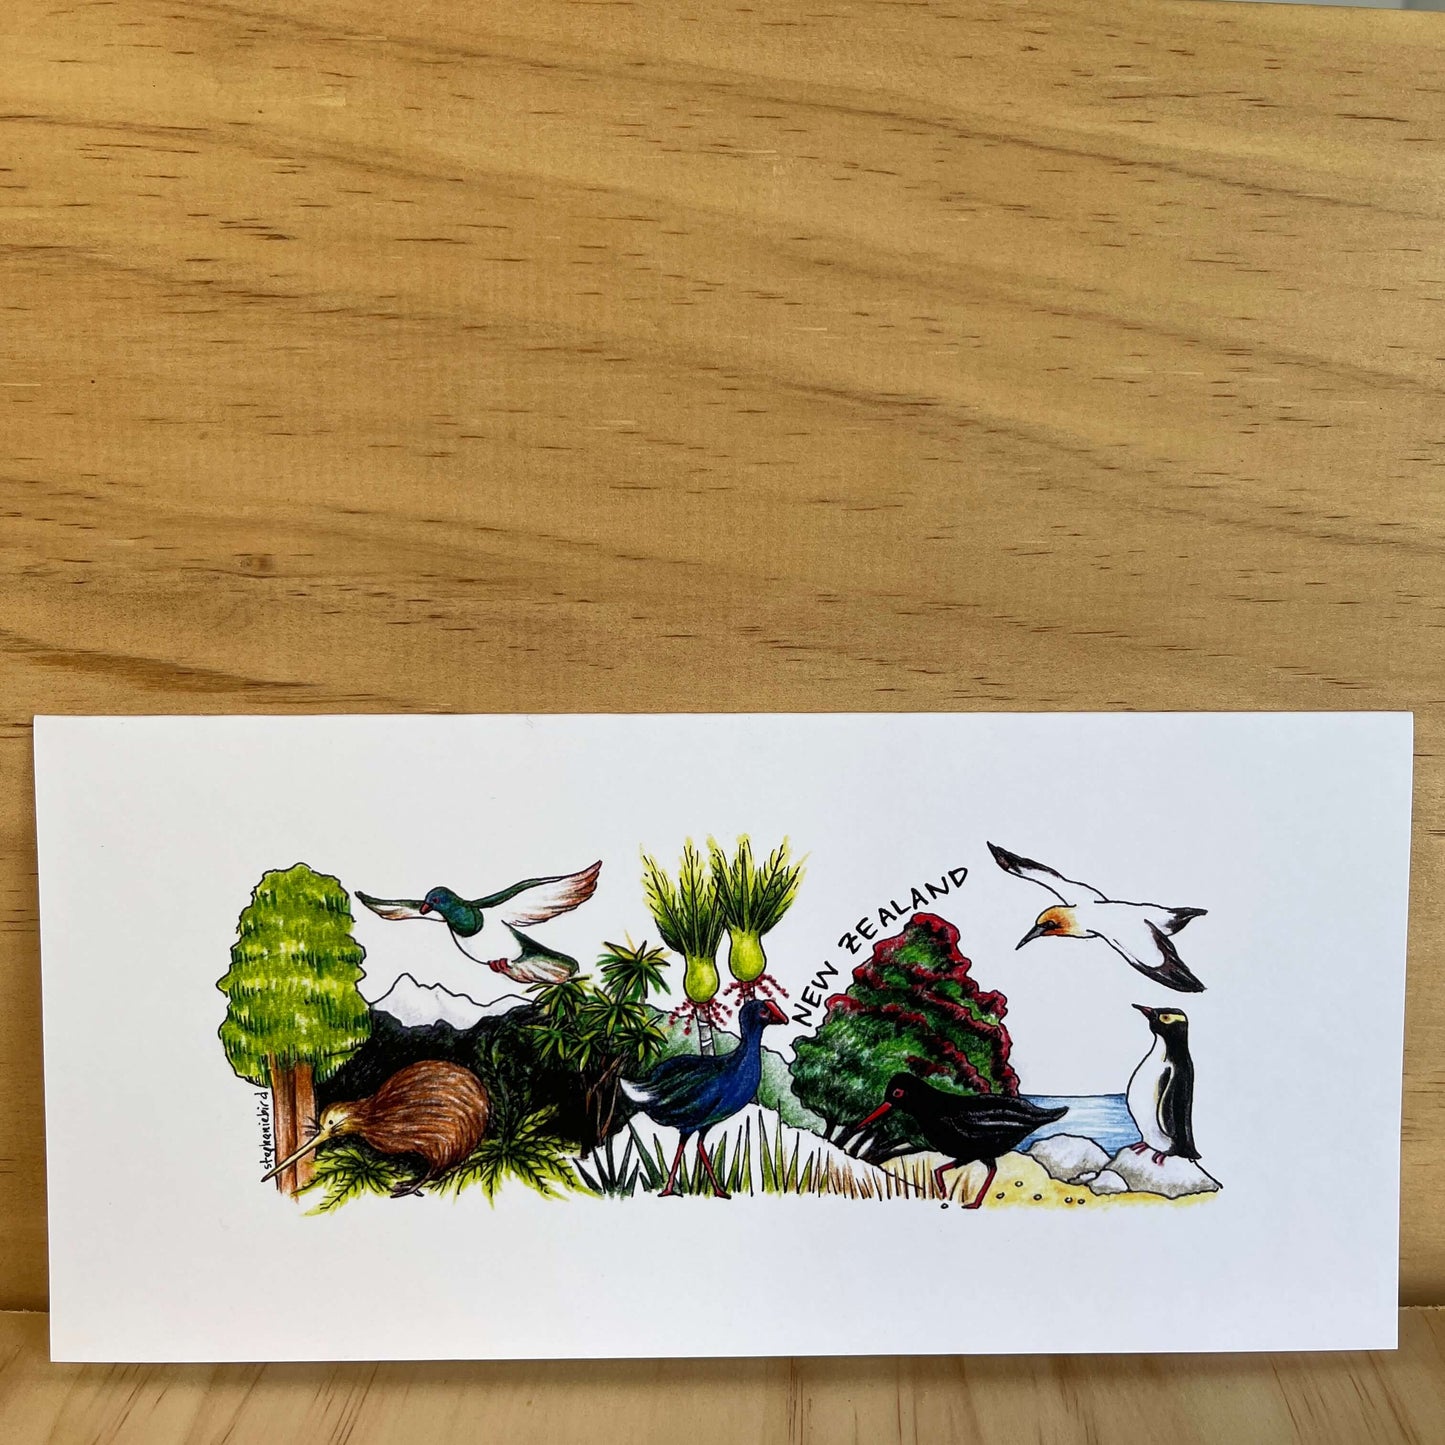 Greeting card with Kiwiana nature scene.